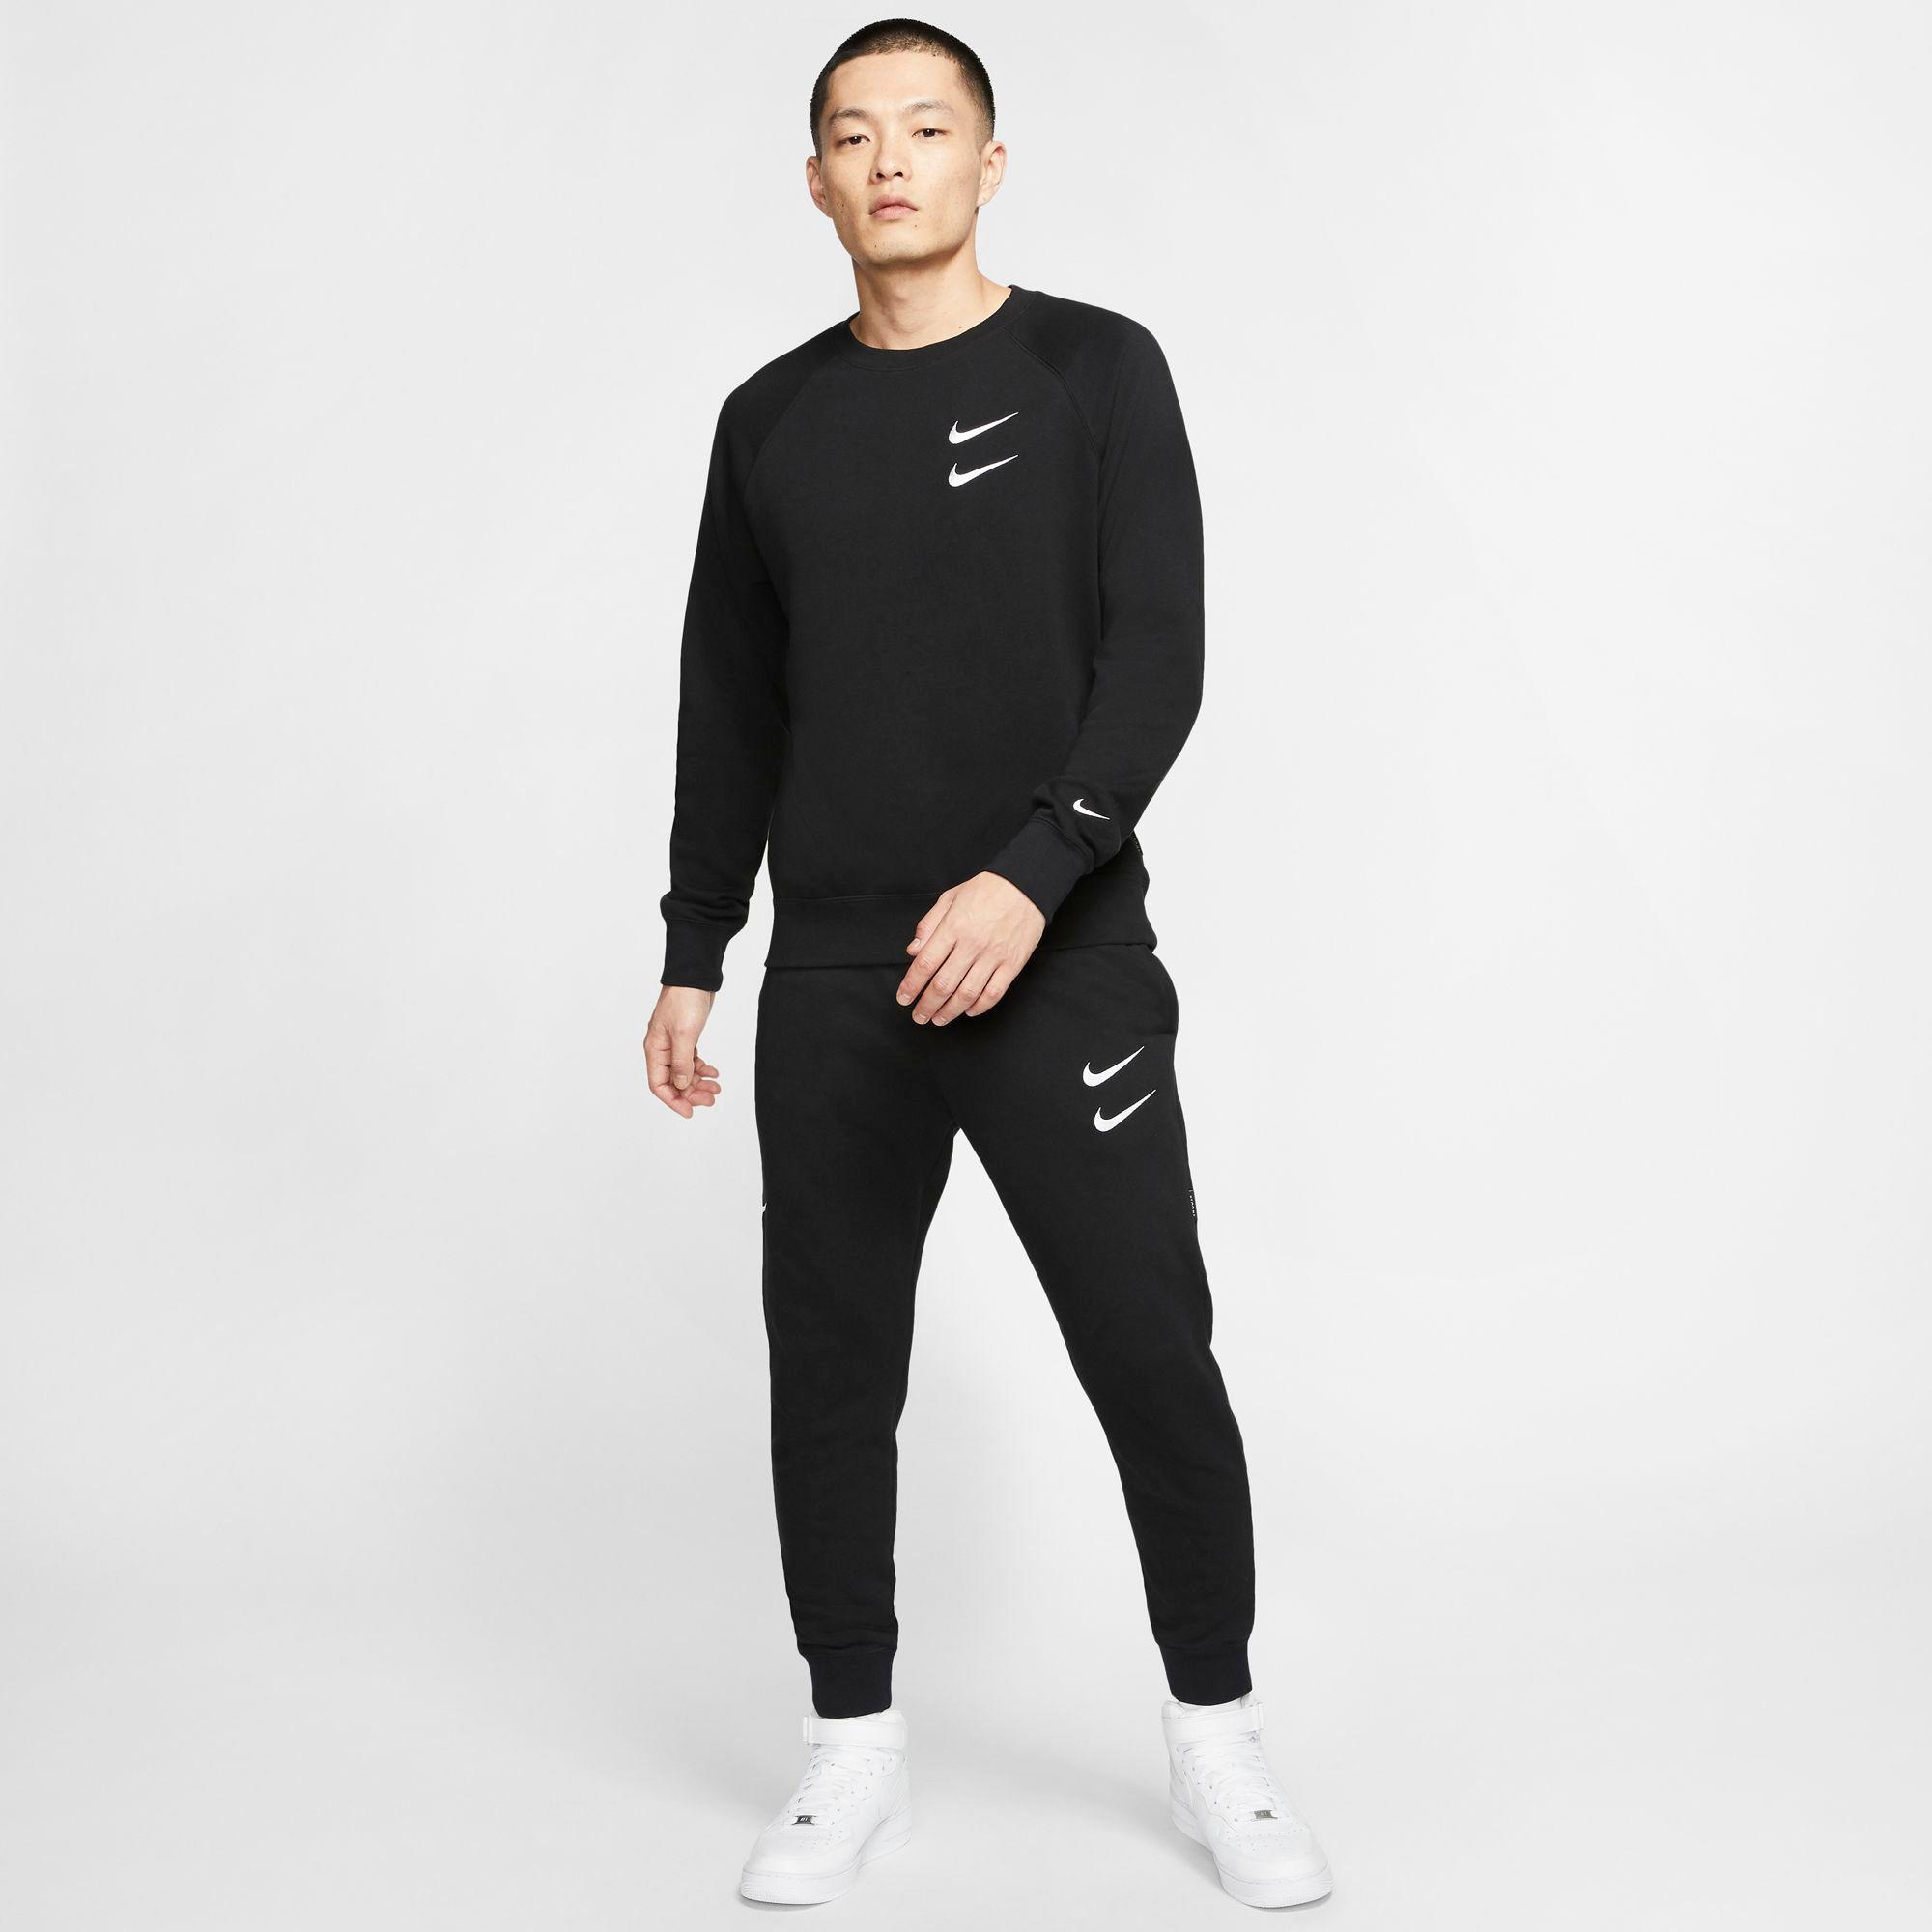 Nike Sportswear Double Swoosh French Terry Crewneck Sweatshirt in Black for  Men - Lyst